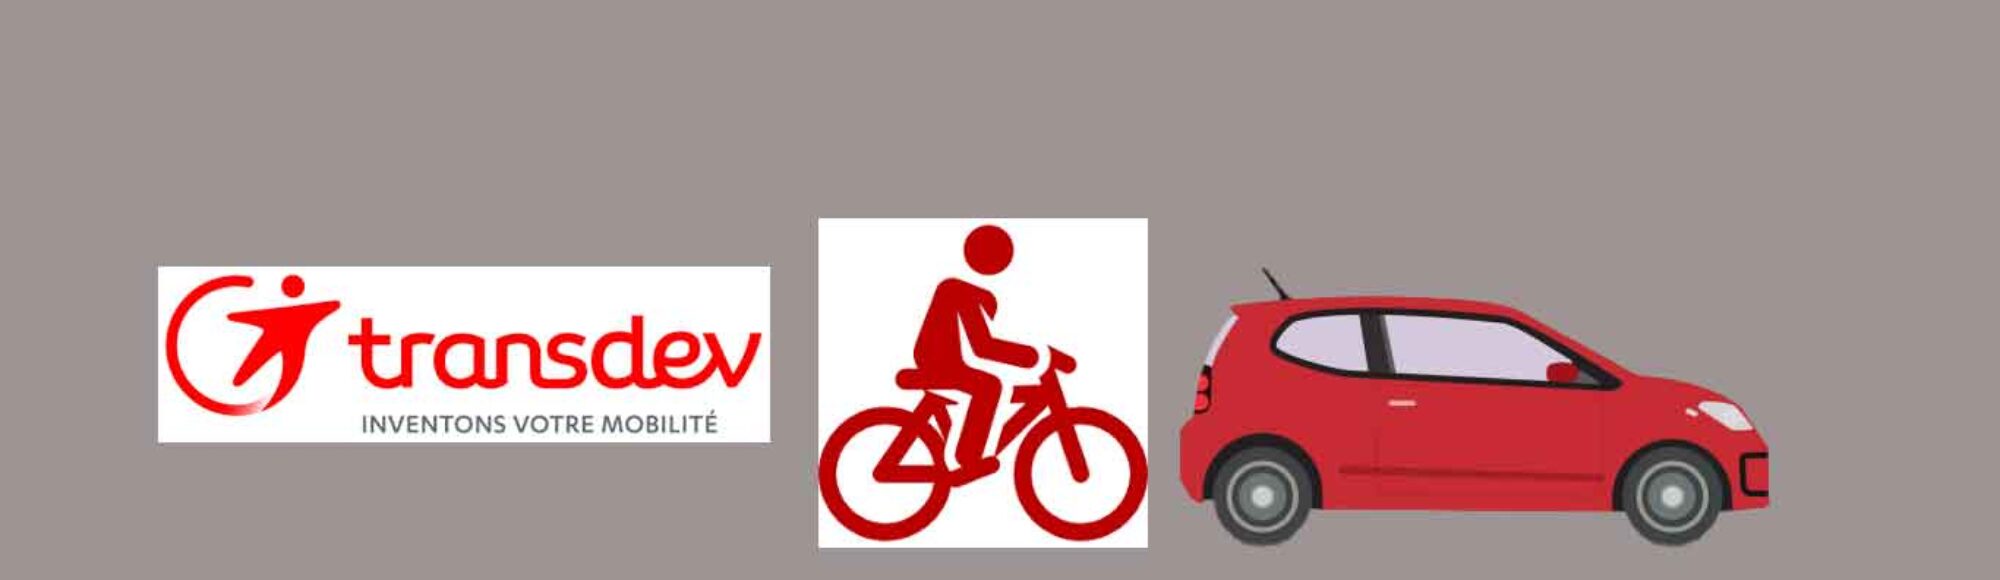 logo et dessin : Transdev -société de transport en commun d'ile de France, dessin d'une personne à vélo et une voiture rouge